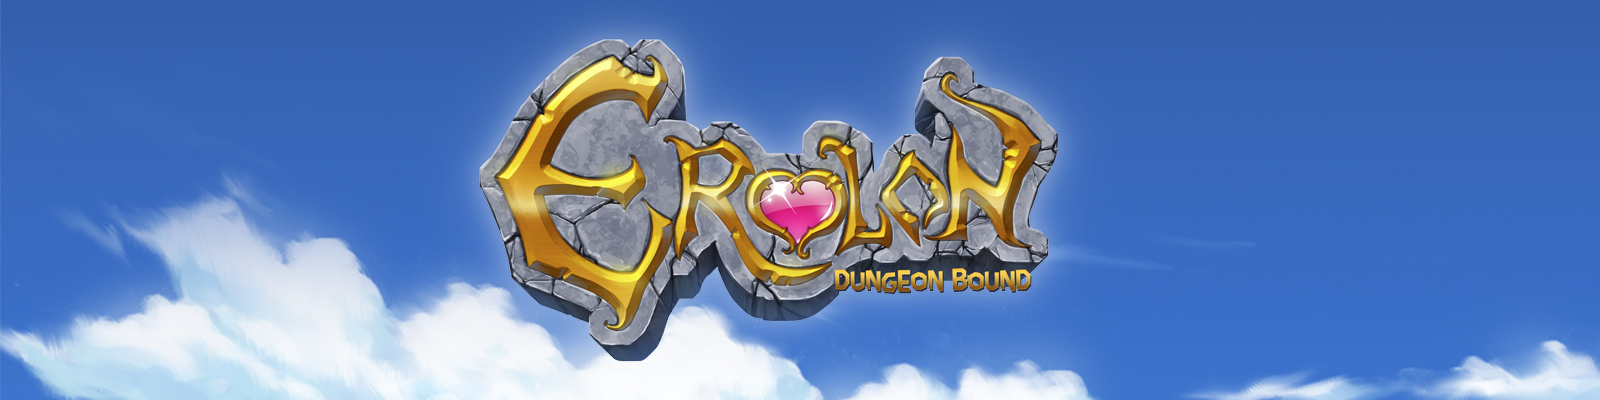 Erolon: Dungeon Bound